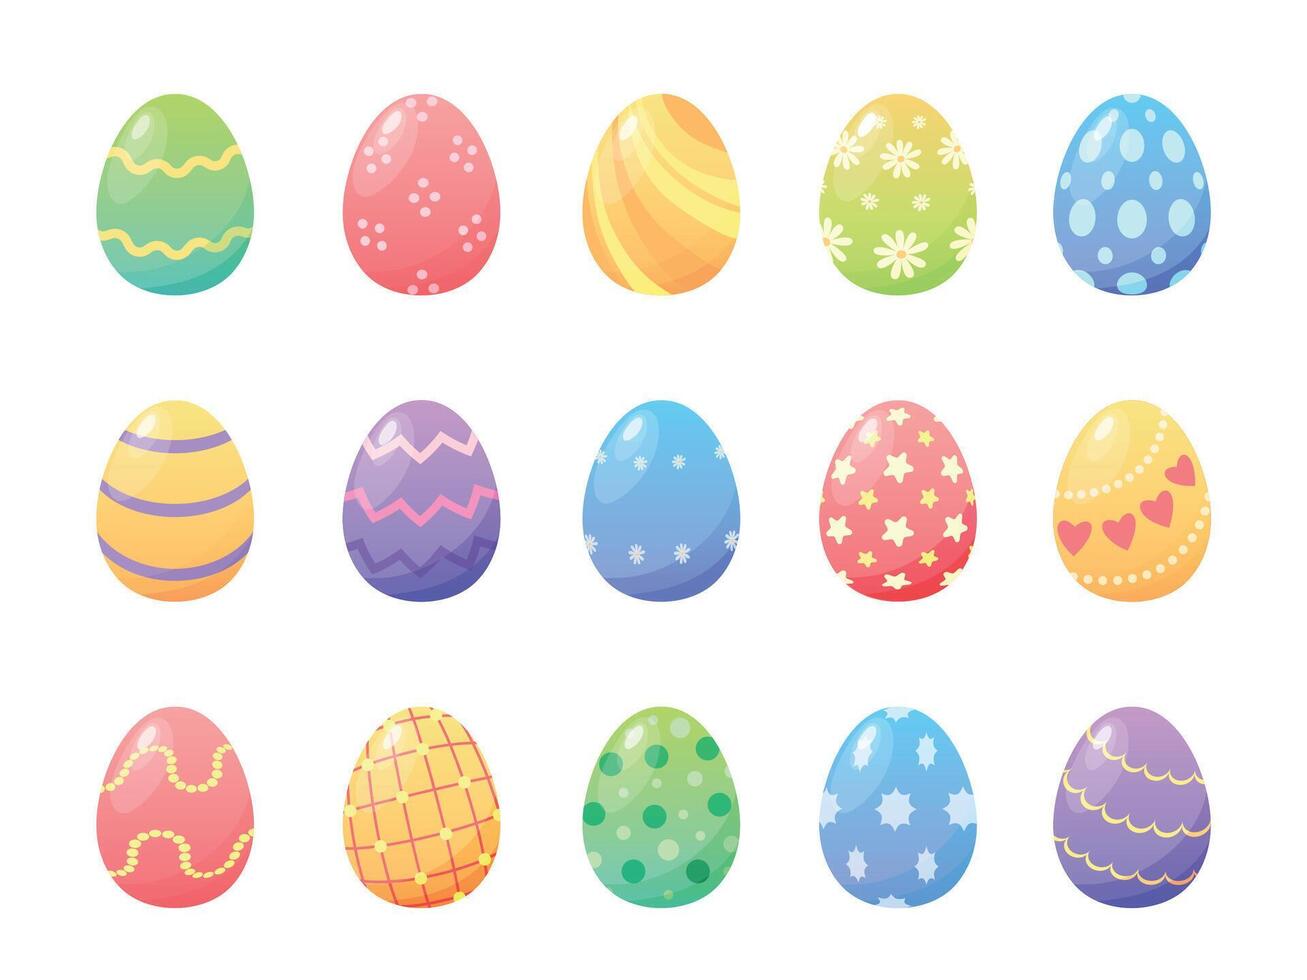 dibujos animados vistoso Pascua de Resurrección pintado huevos con patrones y texturas primavera fiesta decorativo elementos. contento Pascua de Resurrección día huevo cazar vector conjunto